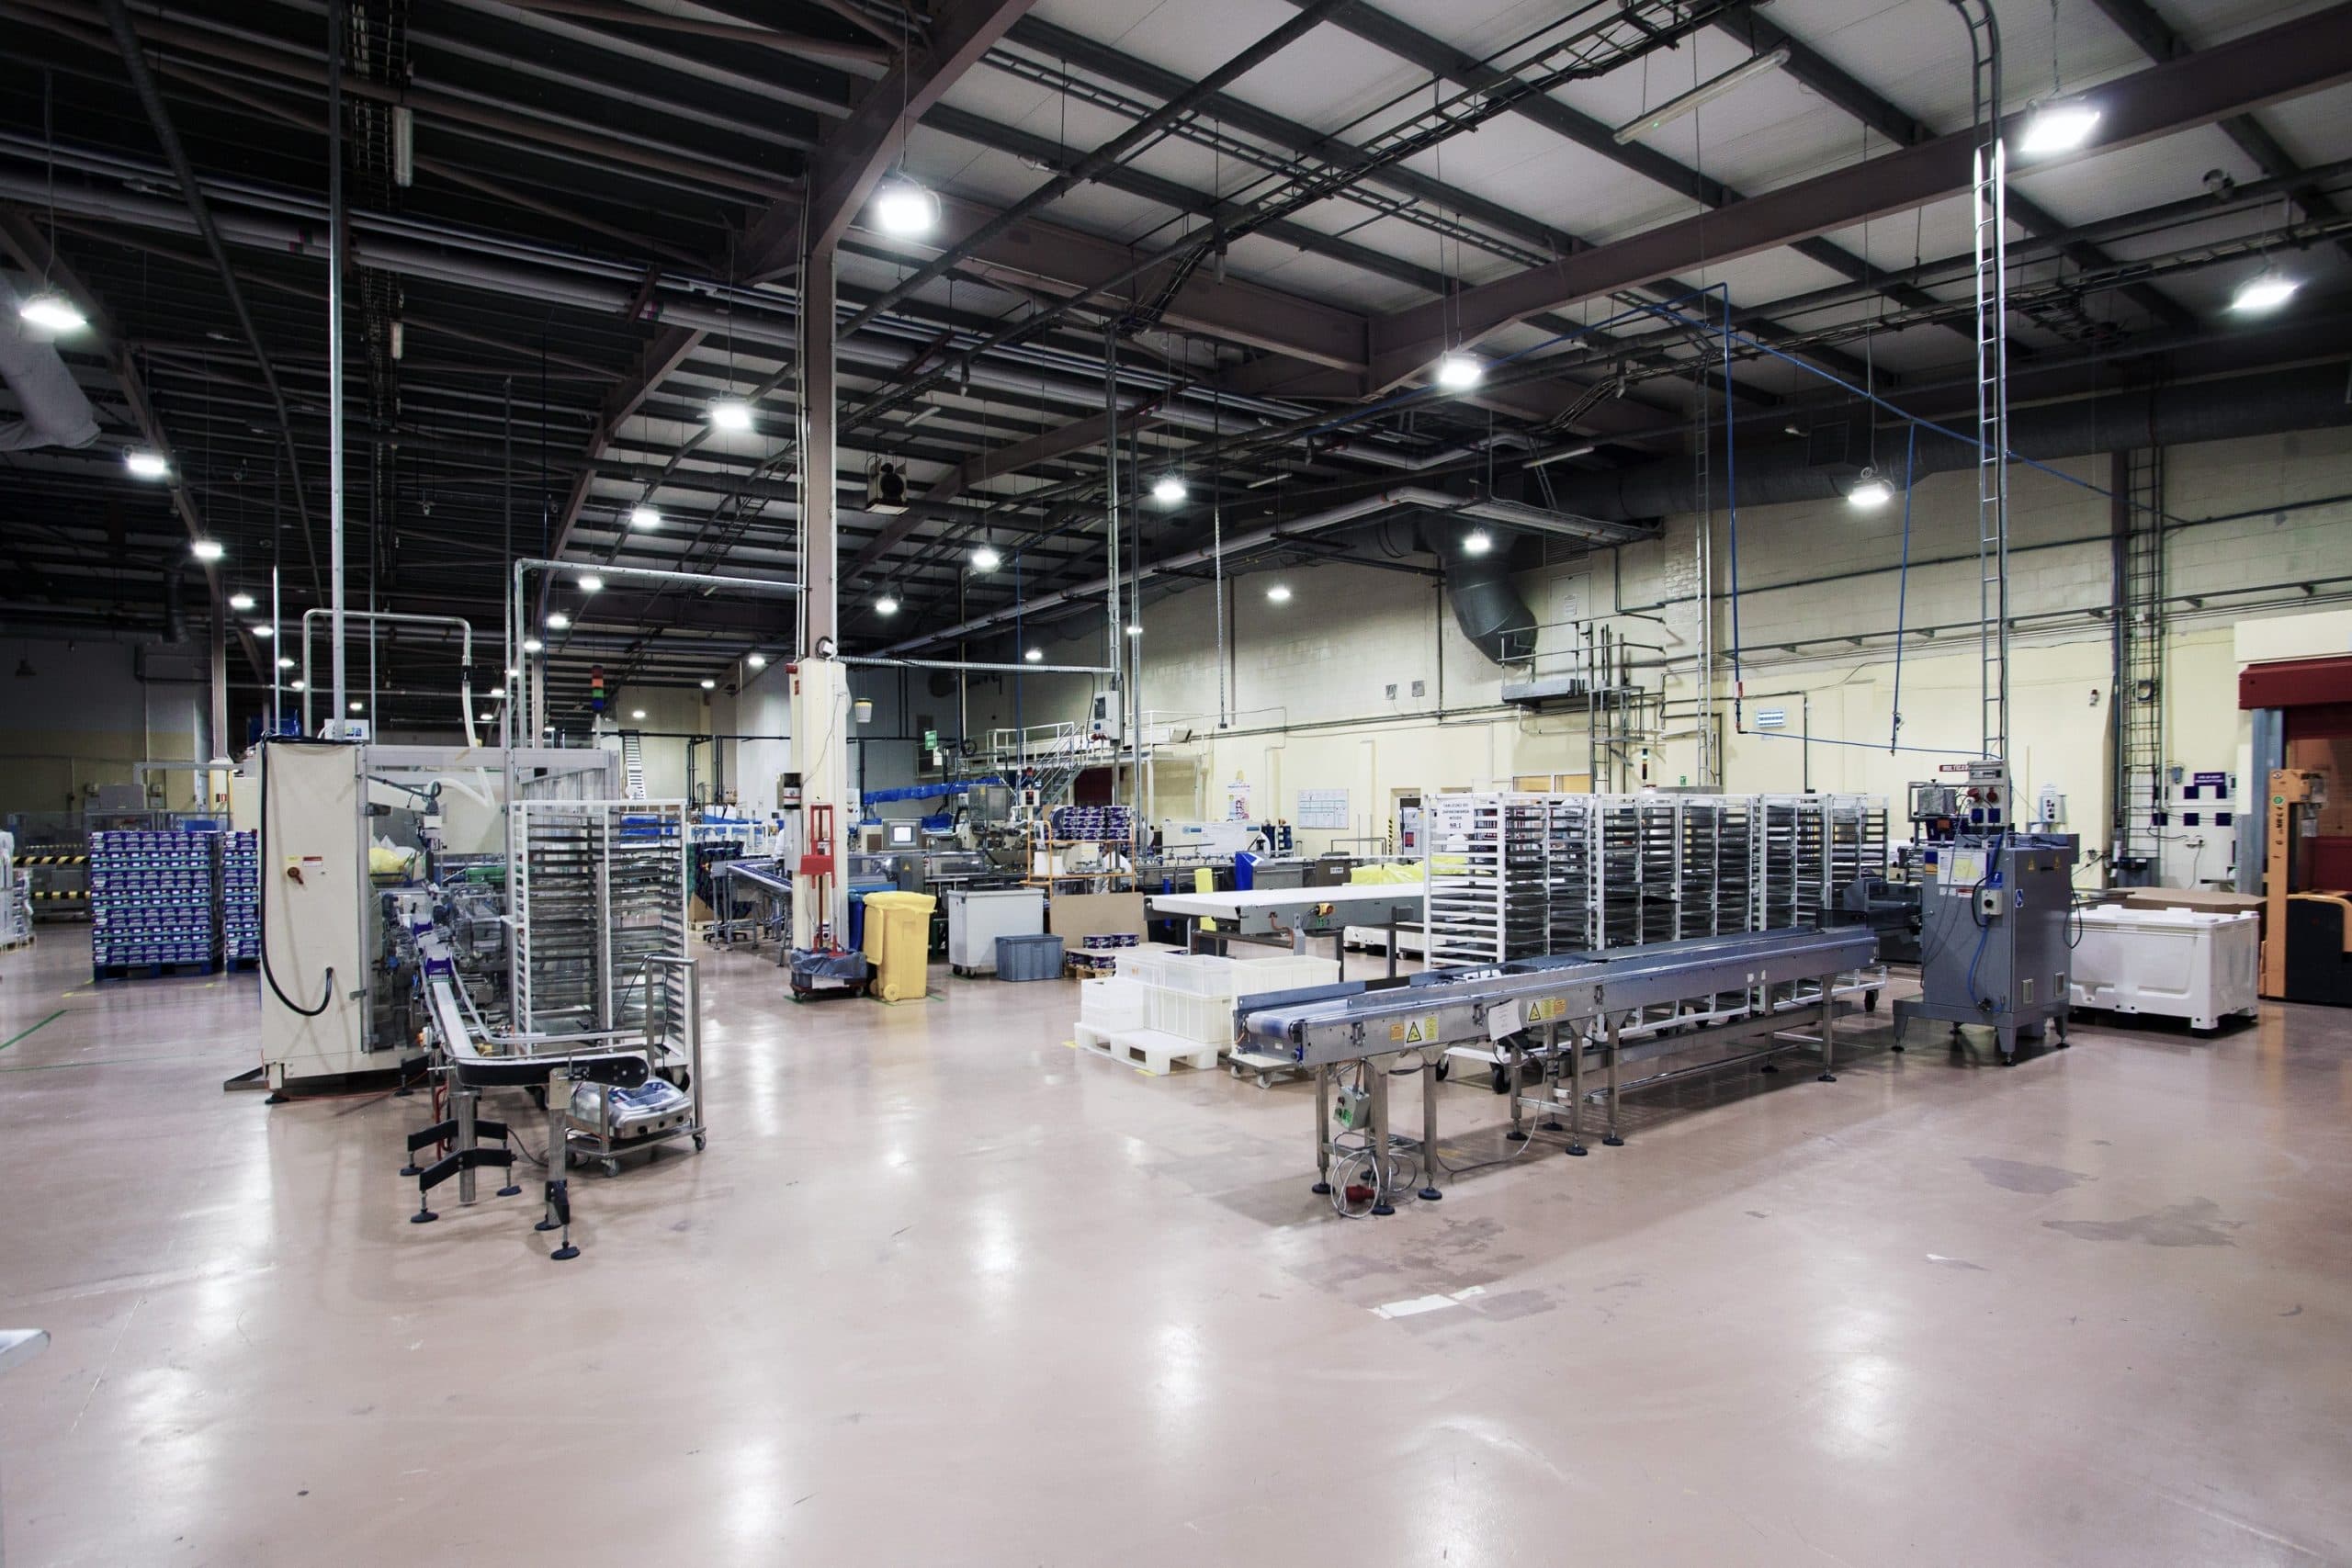 oprawy Highbay w hali produkcyjnej przemysłu spożywczego - Luxon LED